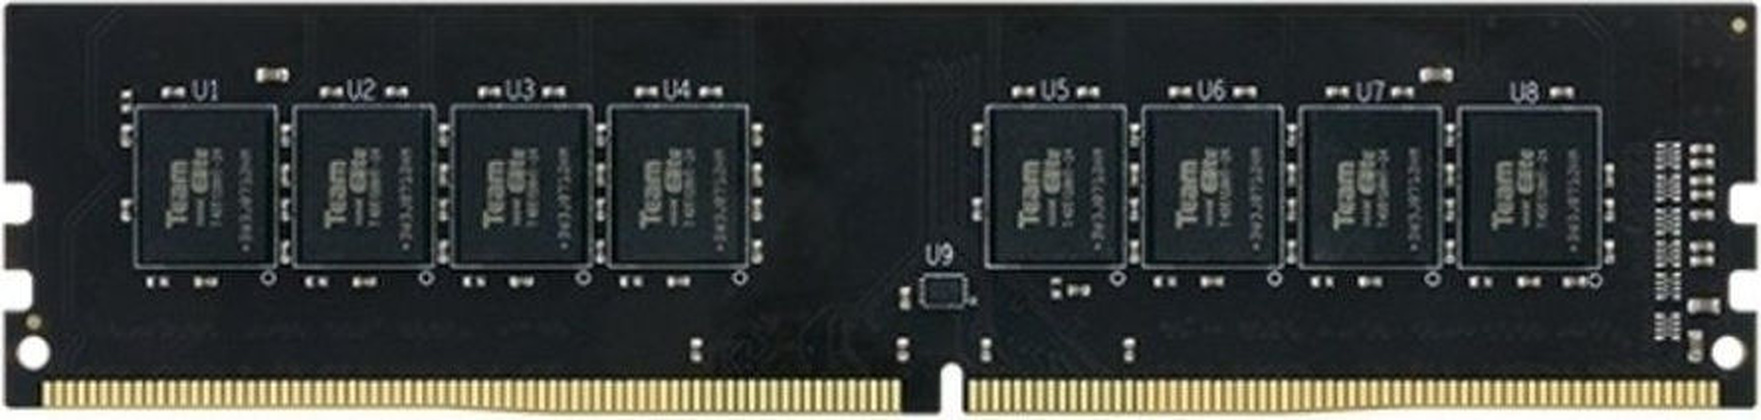 ОЗУ TEAM TED416G2666C1901 DDR4 16 Гб (1x16 Гб)